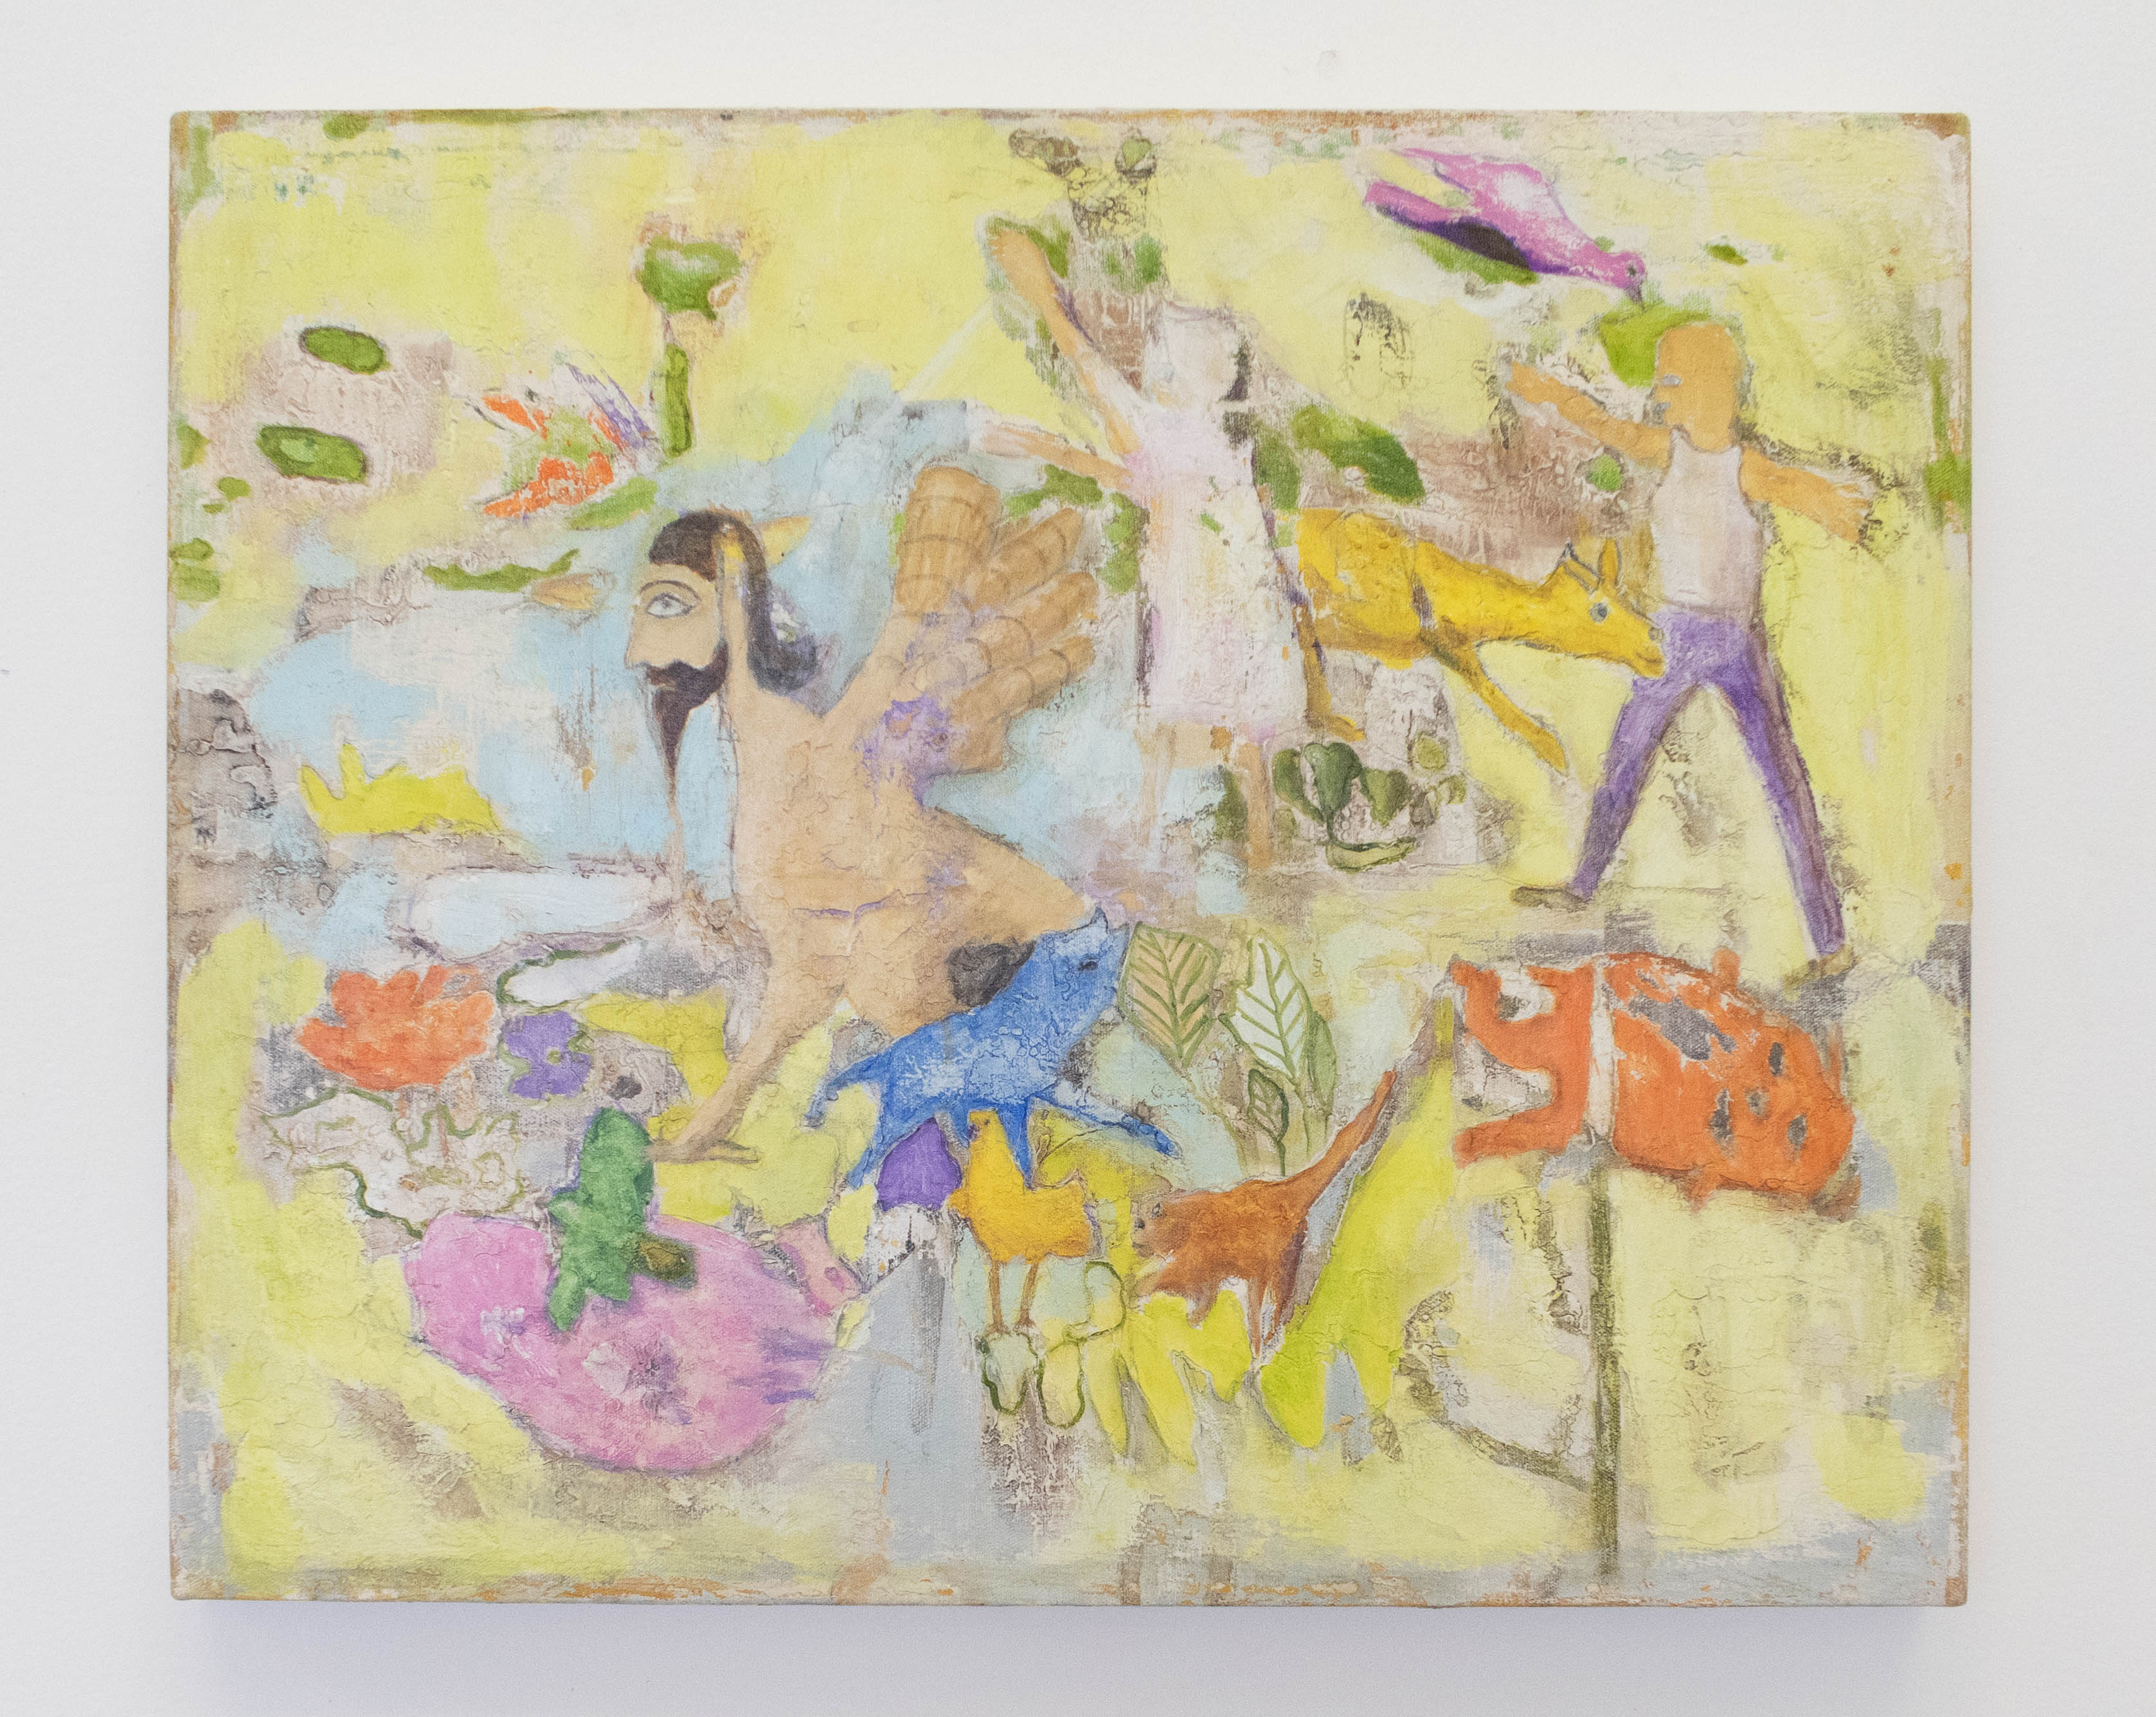 Rosa Hollmann, O Lobisomem, Acrílica sobre tela, 50 x 60 cm, 2012